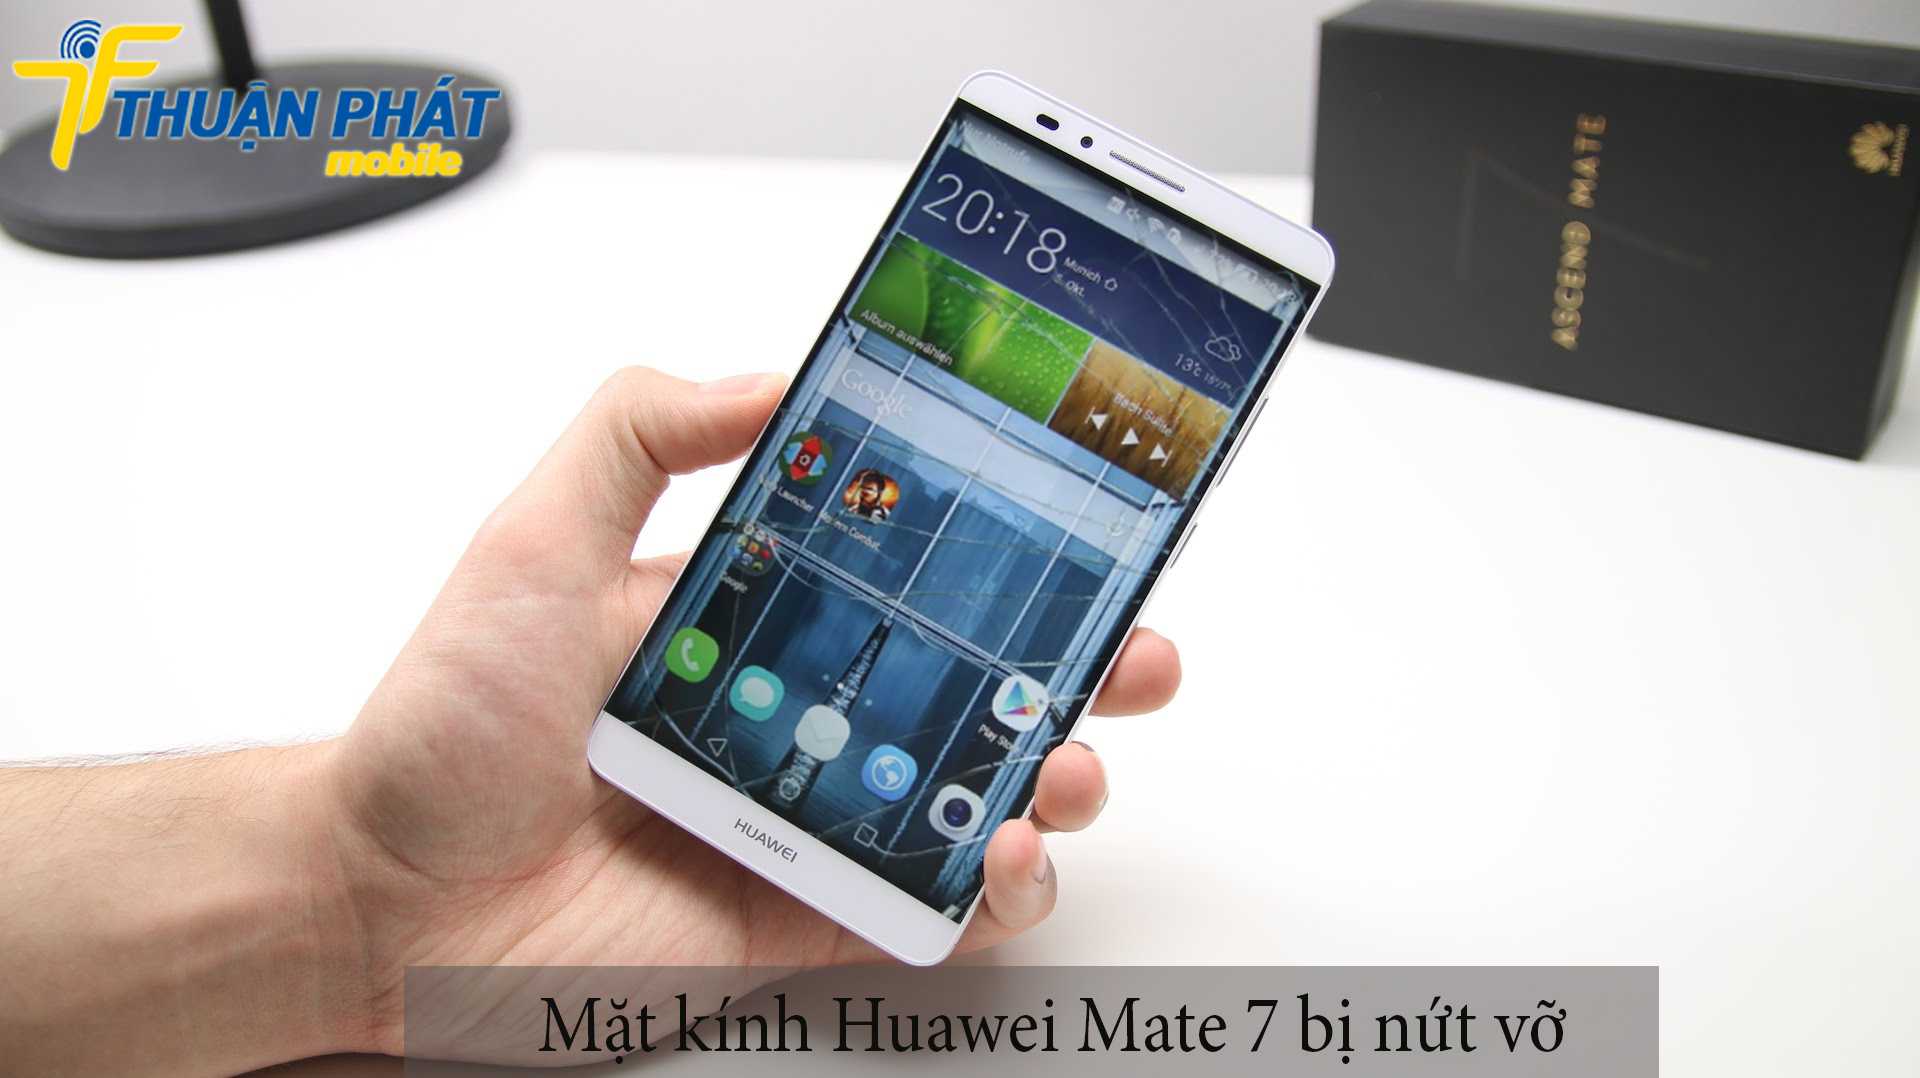 Mặt kính Huawei Mate 7 bị nứt vỡ